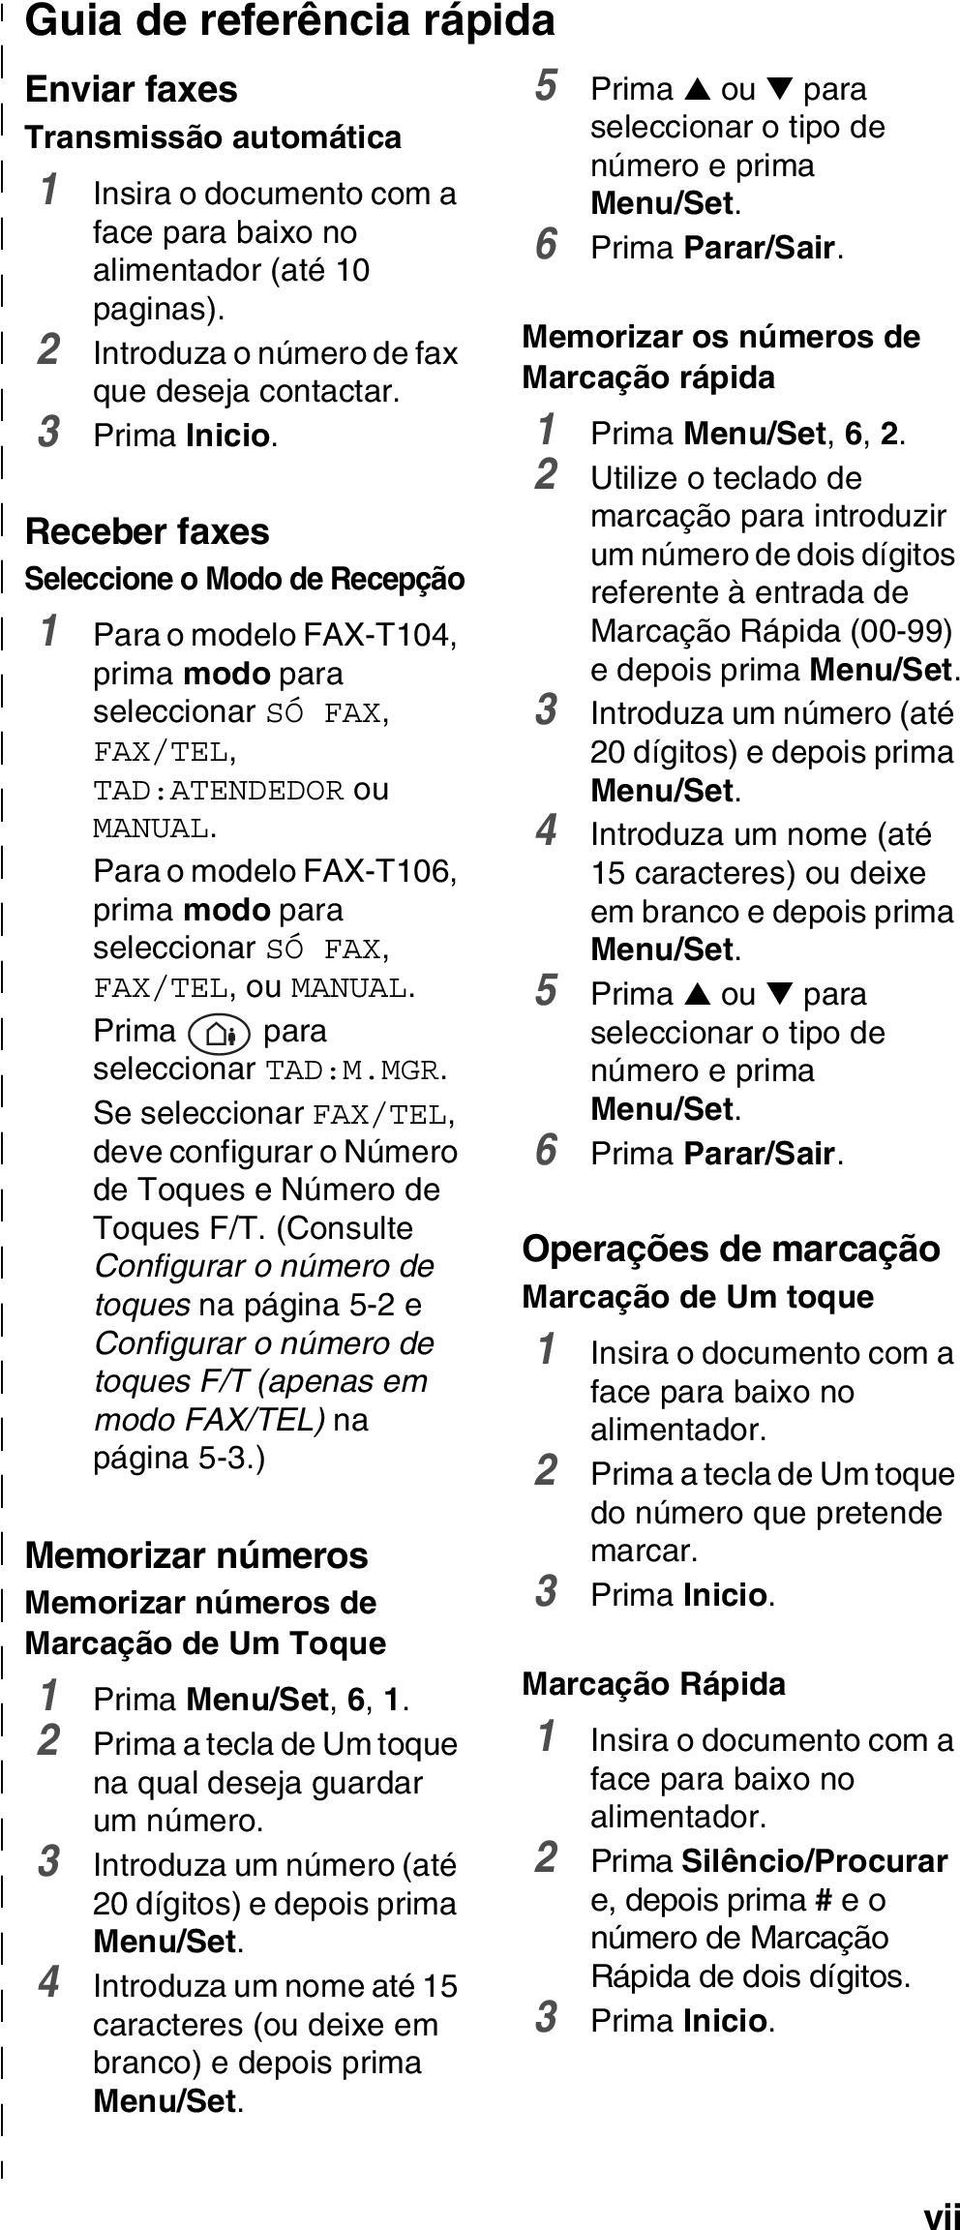 Para o modelo FAX-T106, prima modo para seleccionar SÓ FAX, FAX/TEL, ou MANUAL. Prima para seleccionar TAD:M.MGR. Se seleccionar FAX/TEL, deve configurar o Número de Toques e Número de Toques F/T.